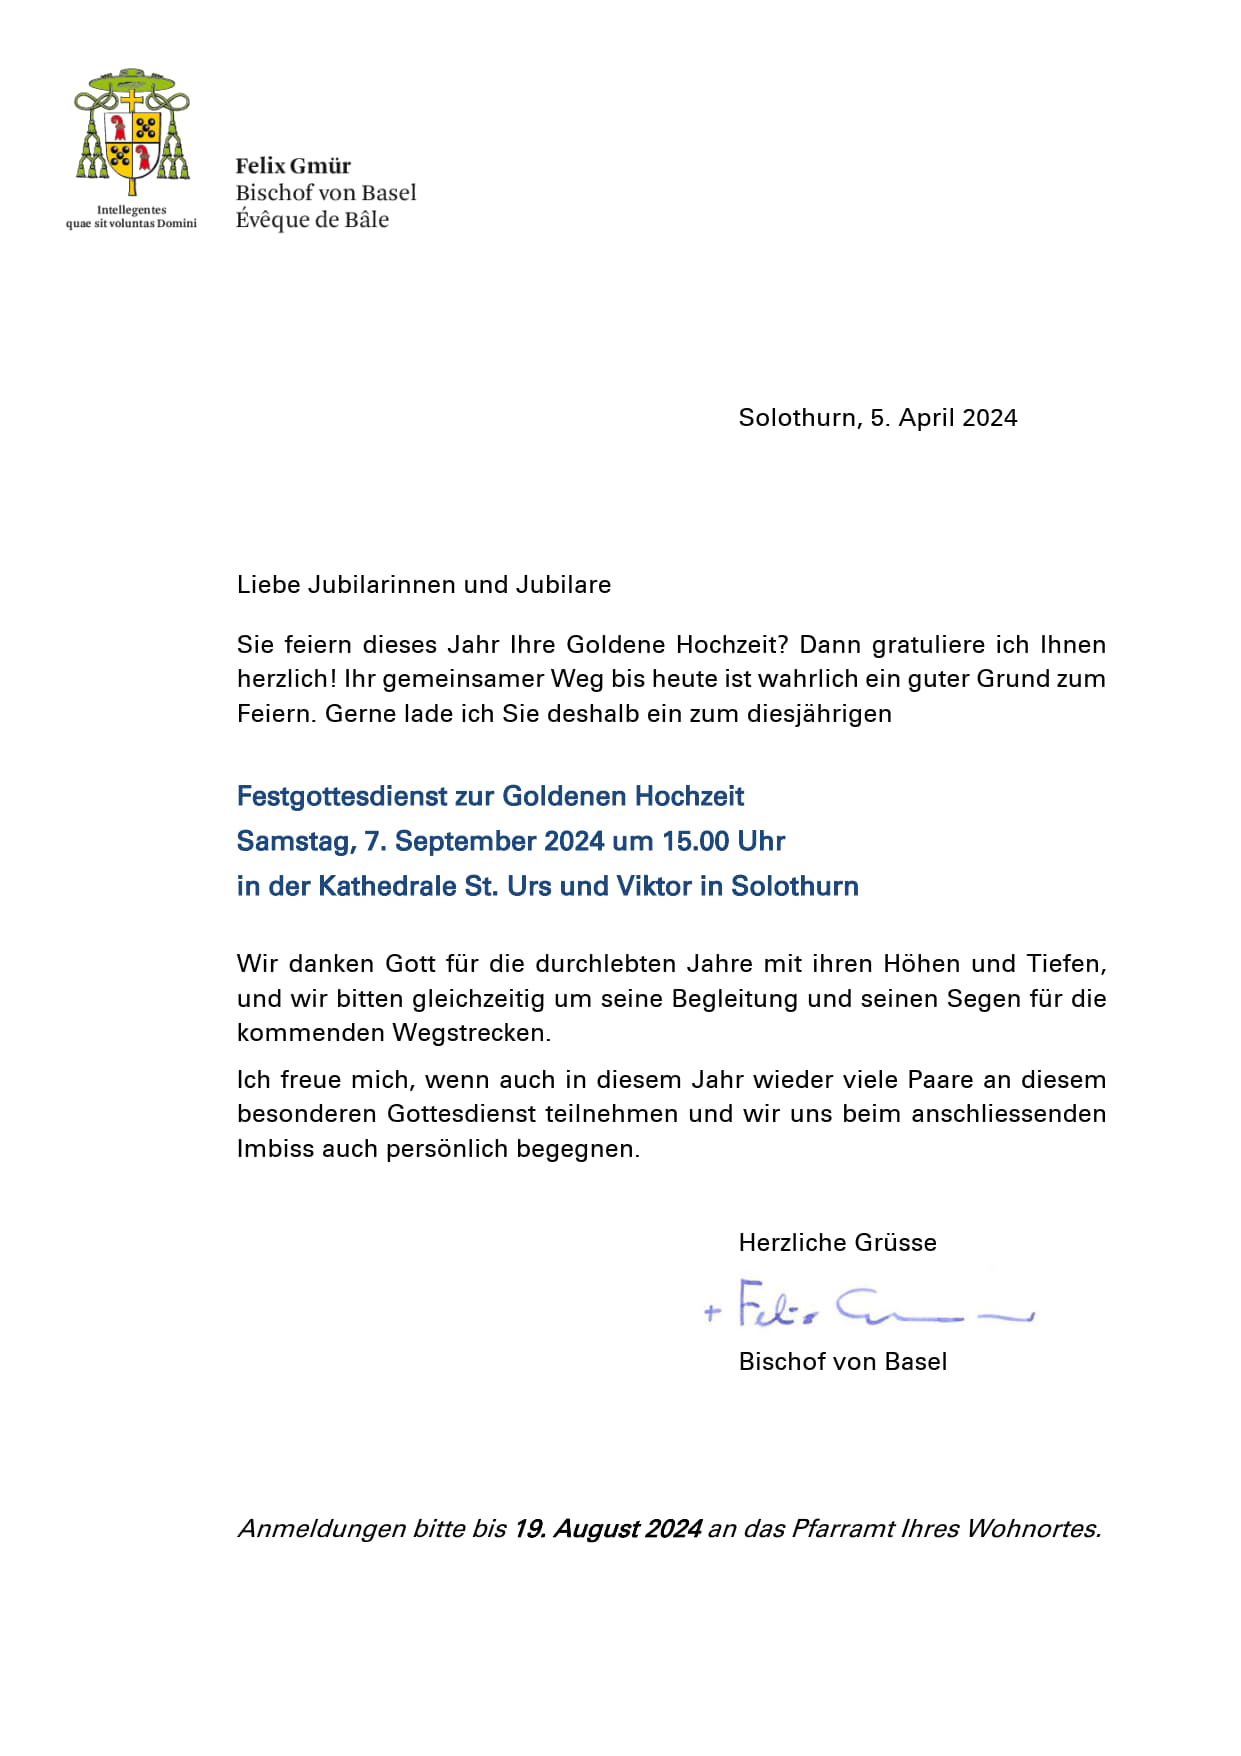 Einladung Bistum Basel, Goldene Hochzeit